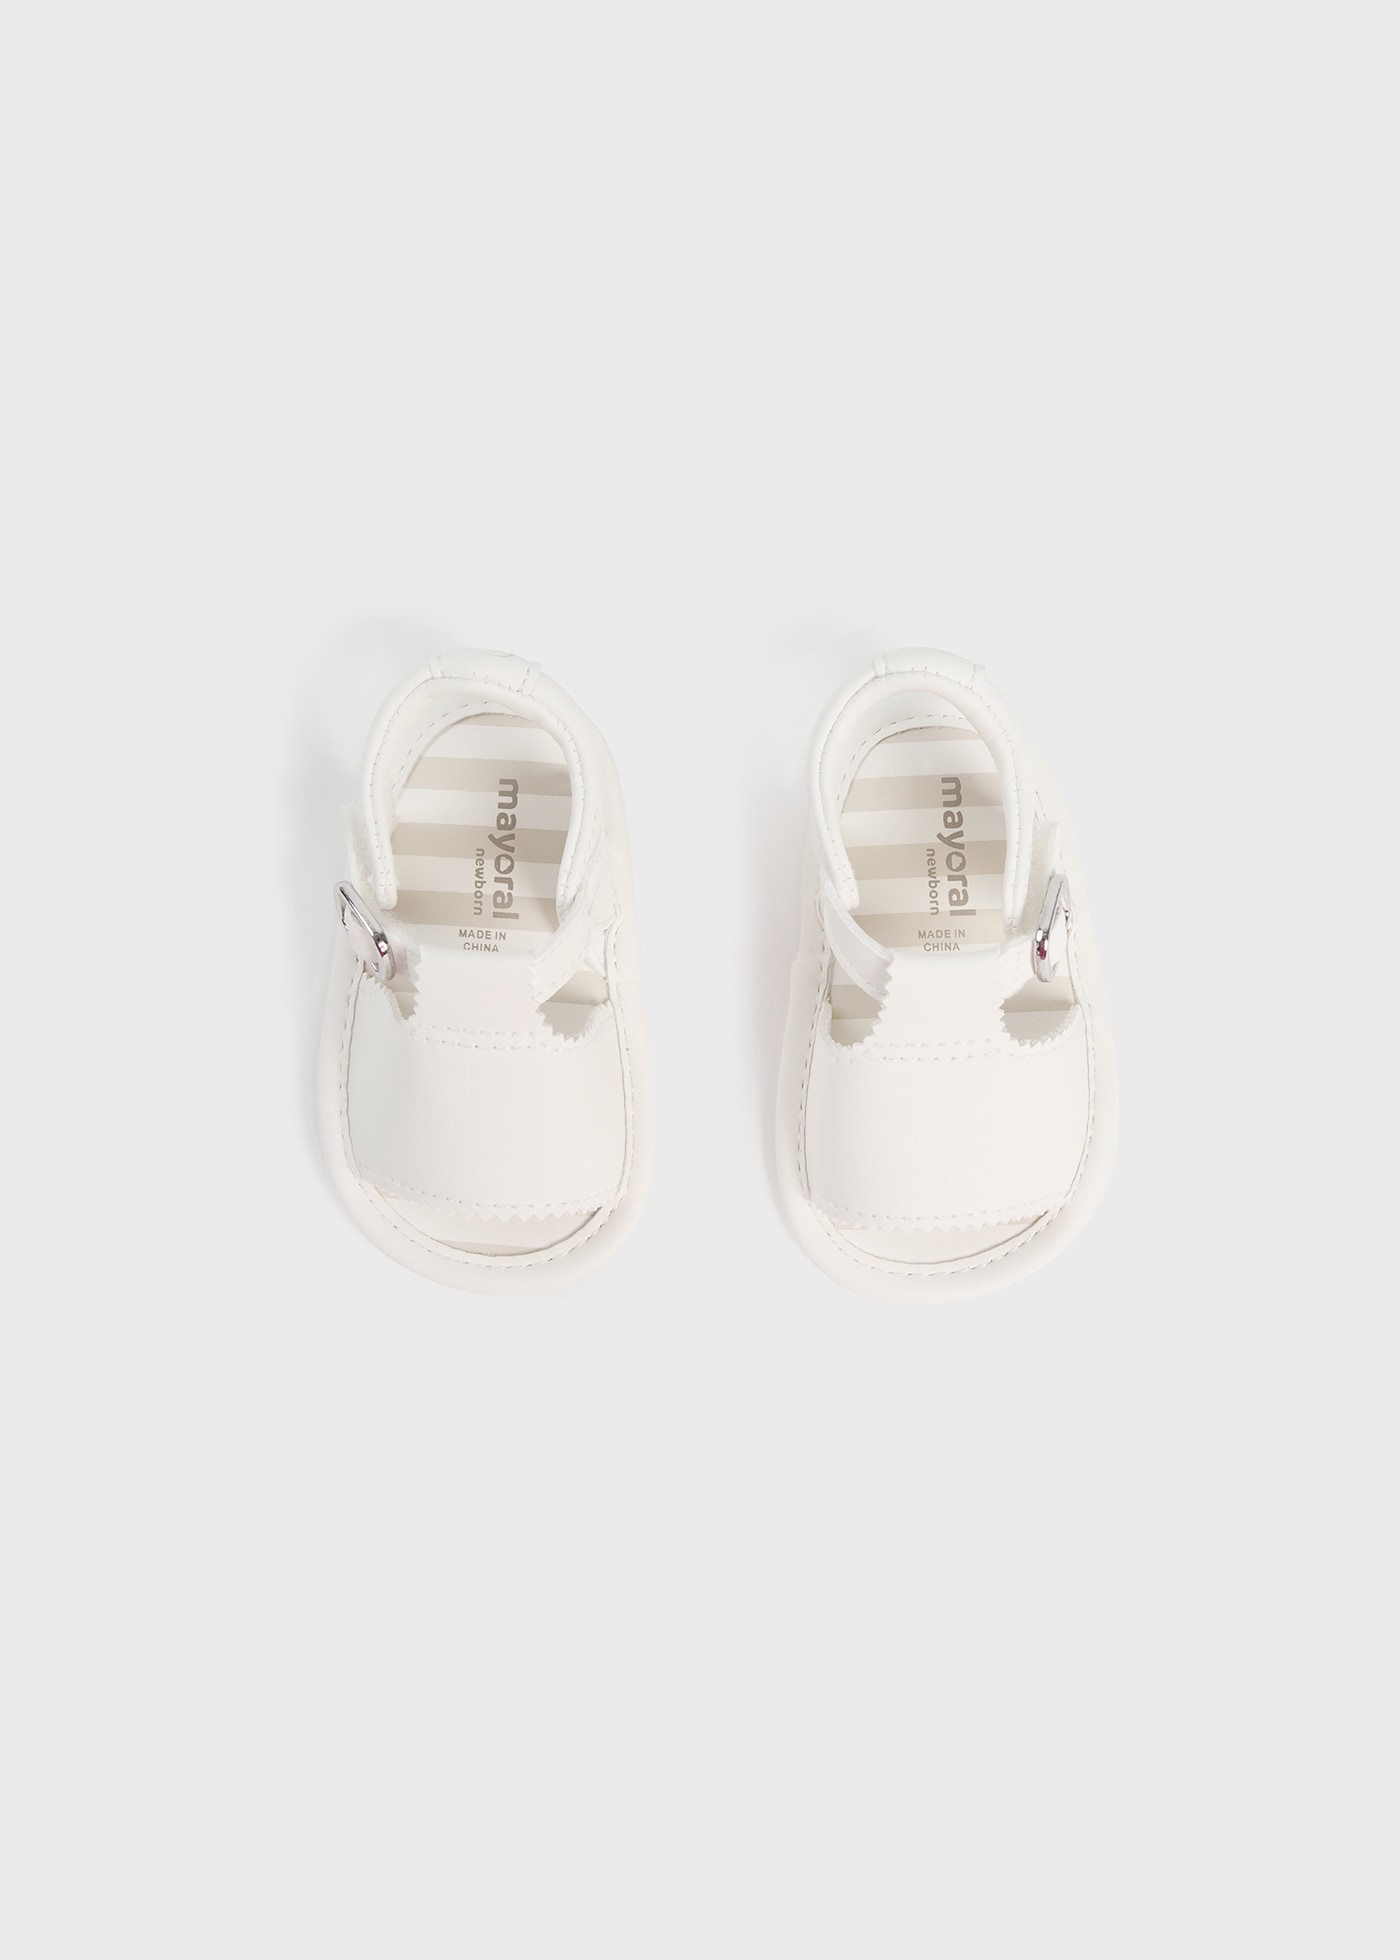 Sandali neonato